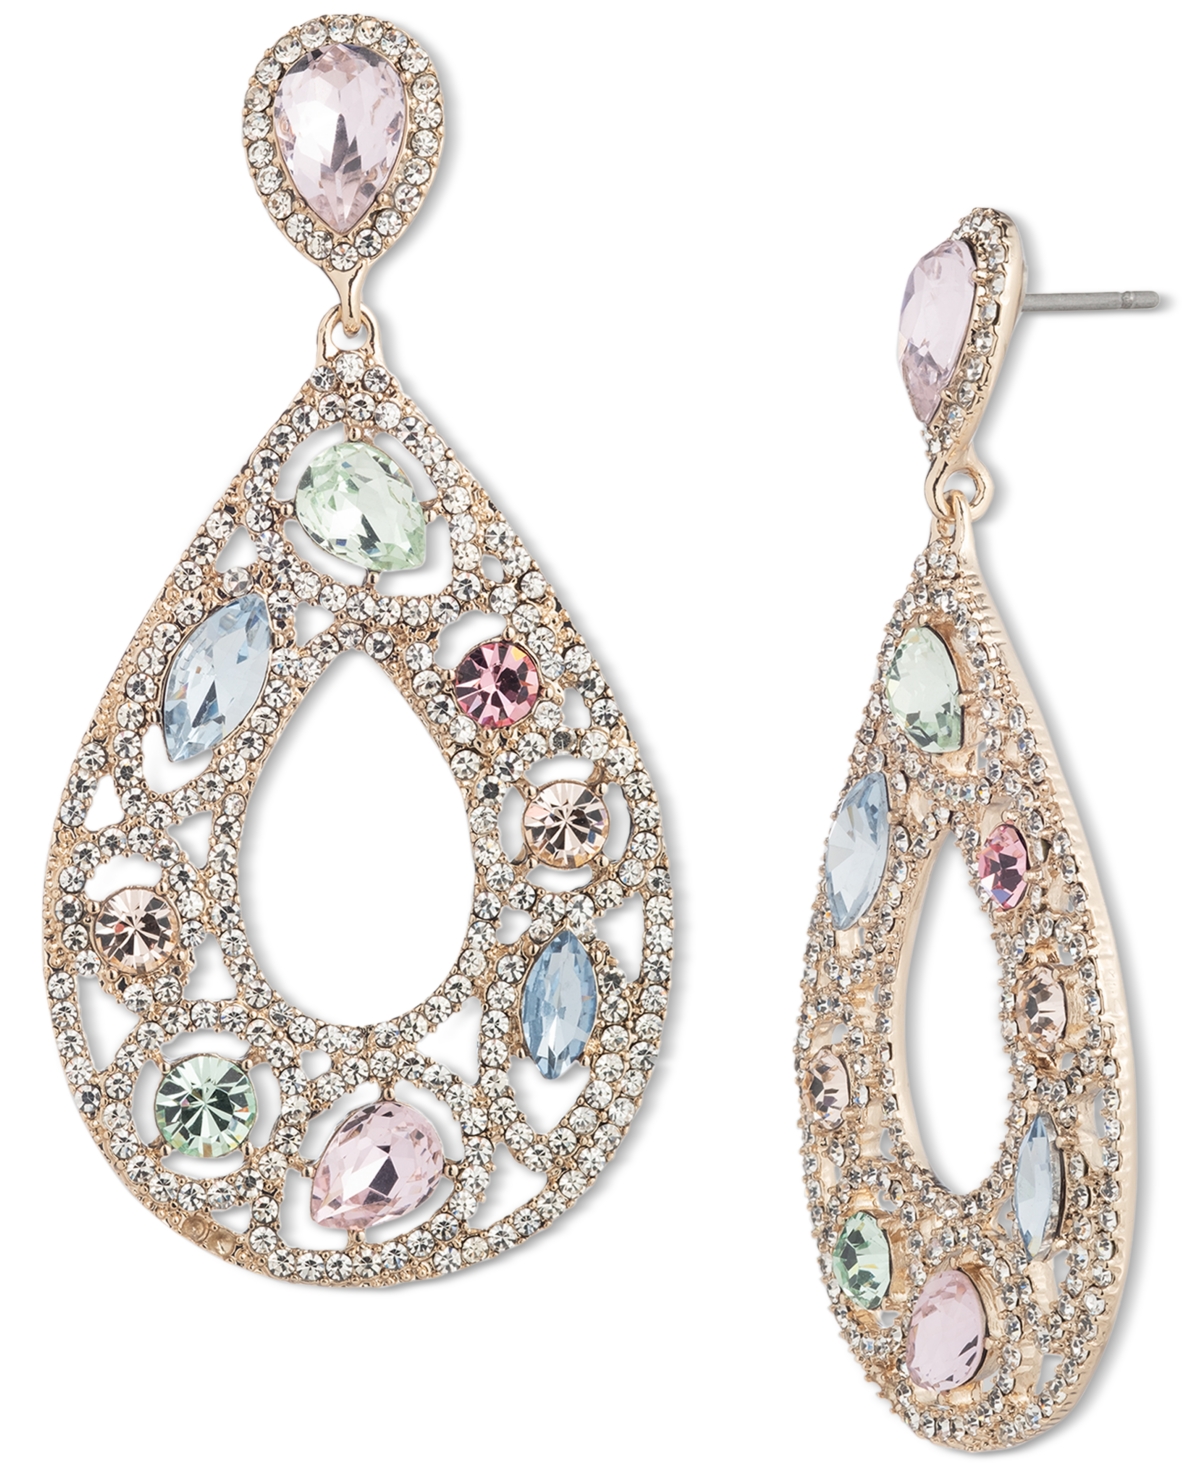 Mixed Crystal Open Pear-Shape Drop Earrings - White